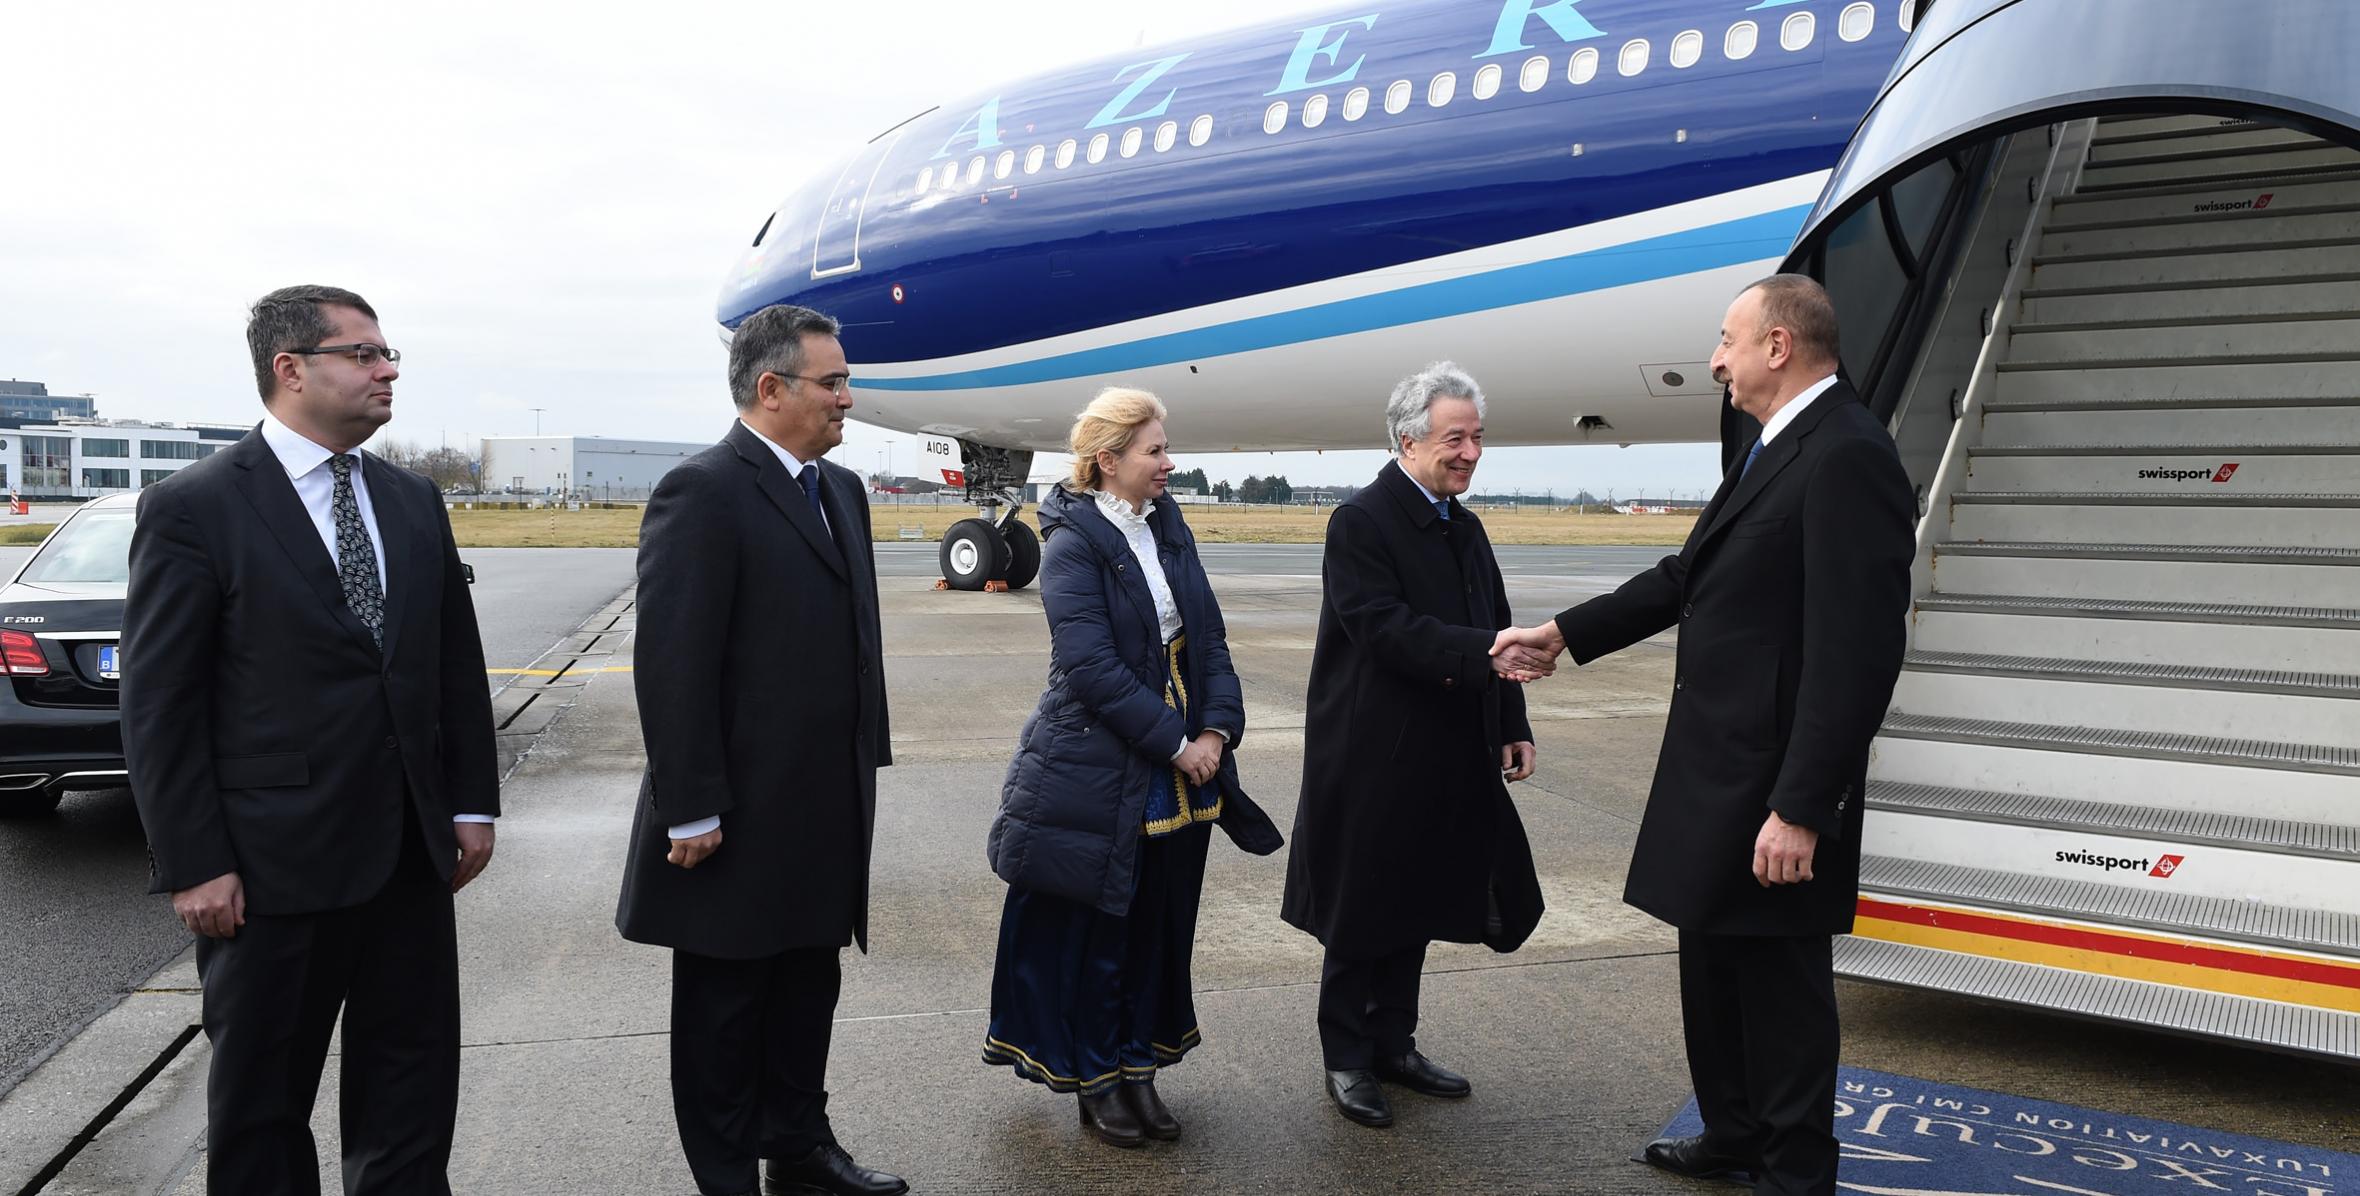 Ilham Aliyev arrived in Belgium